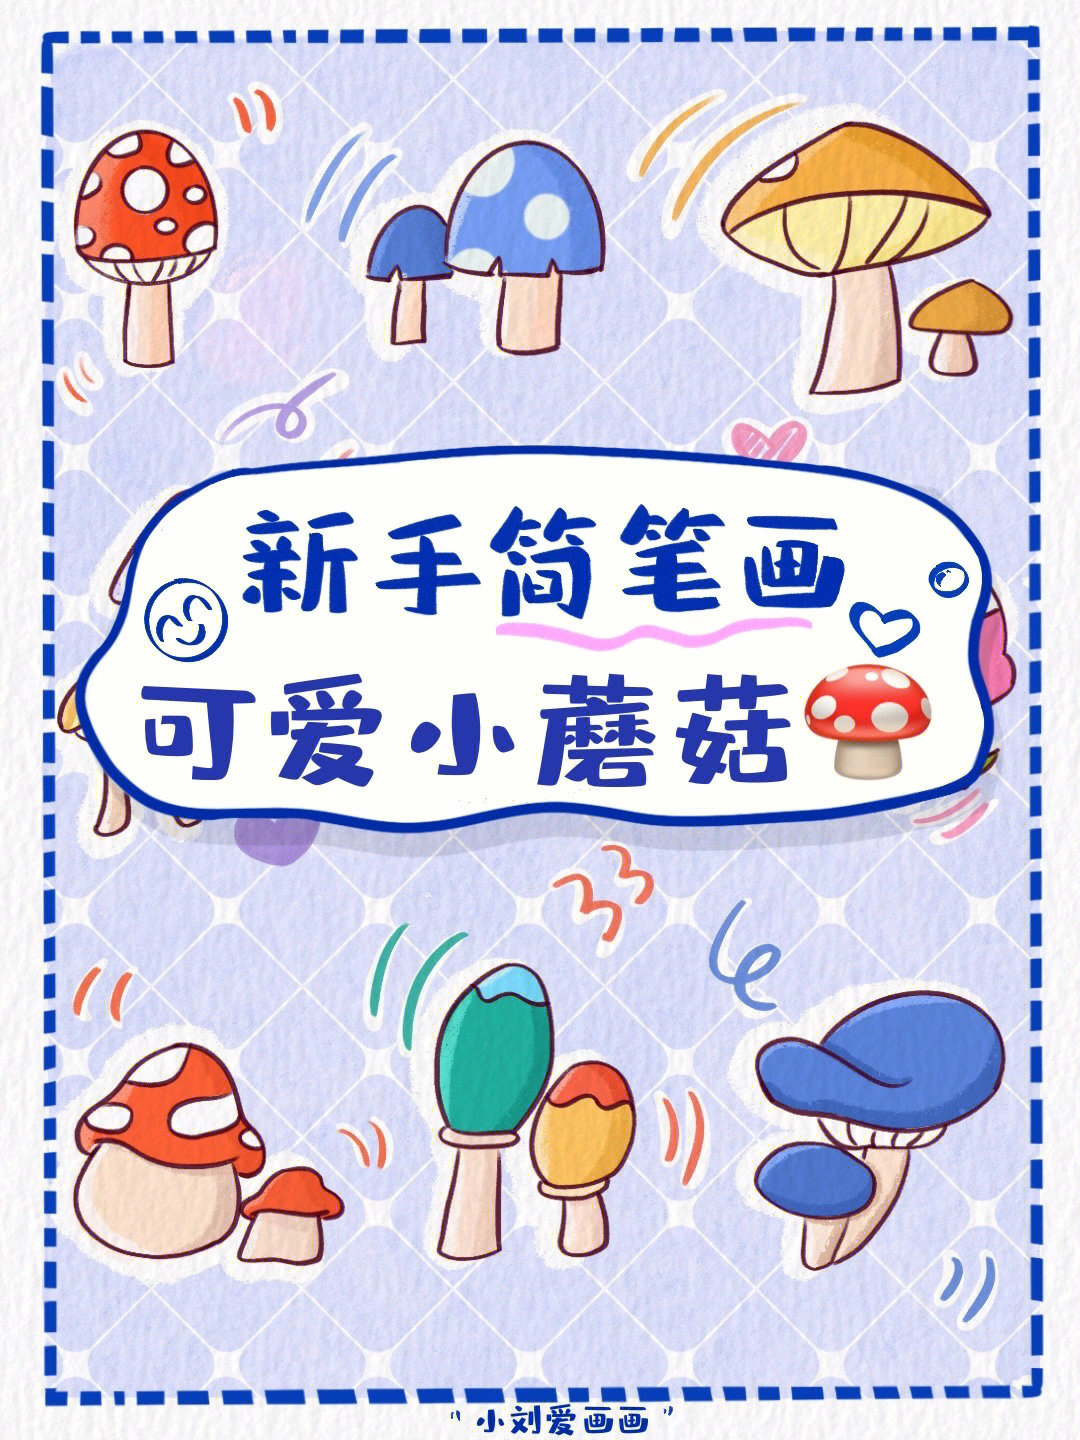 懒人学插画36可爱小蘑菇简笔画素材分享